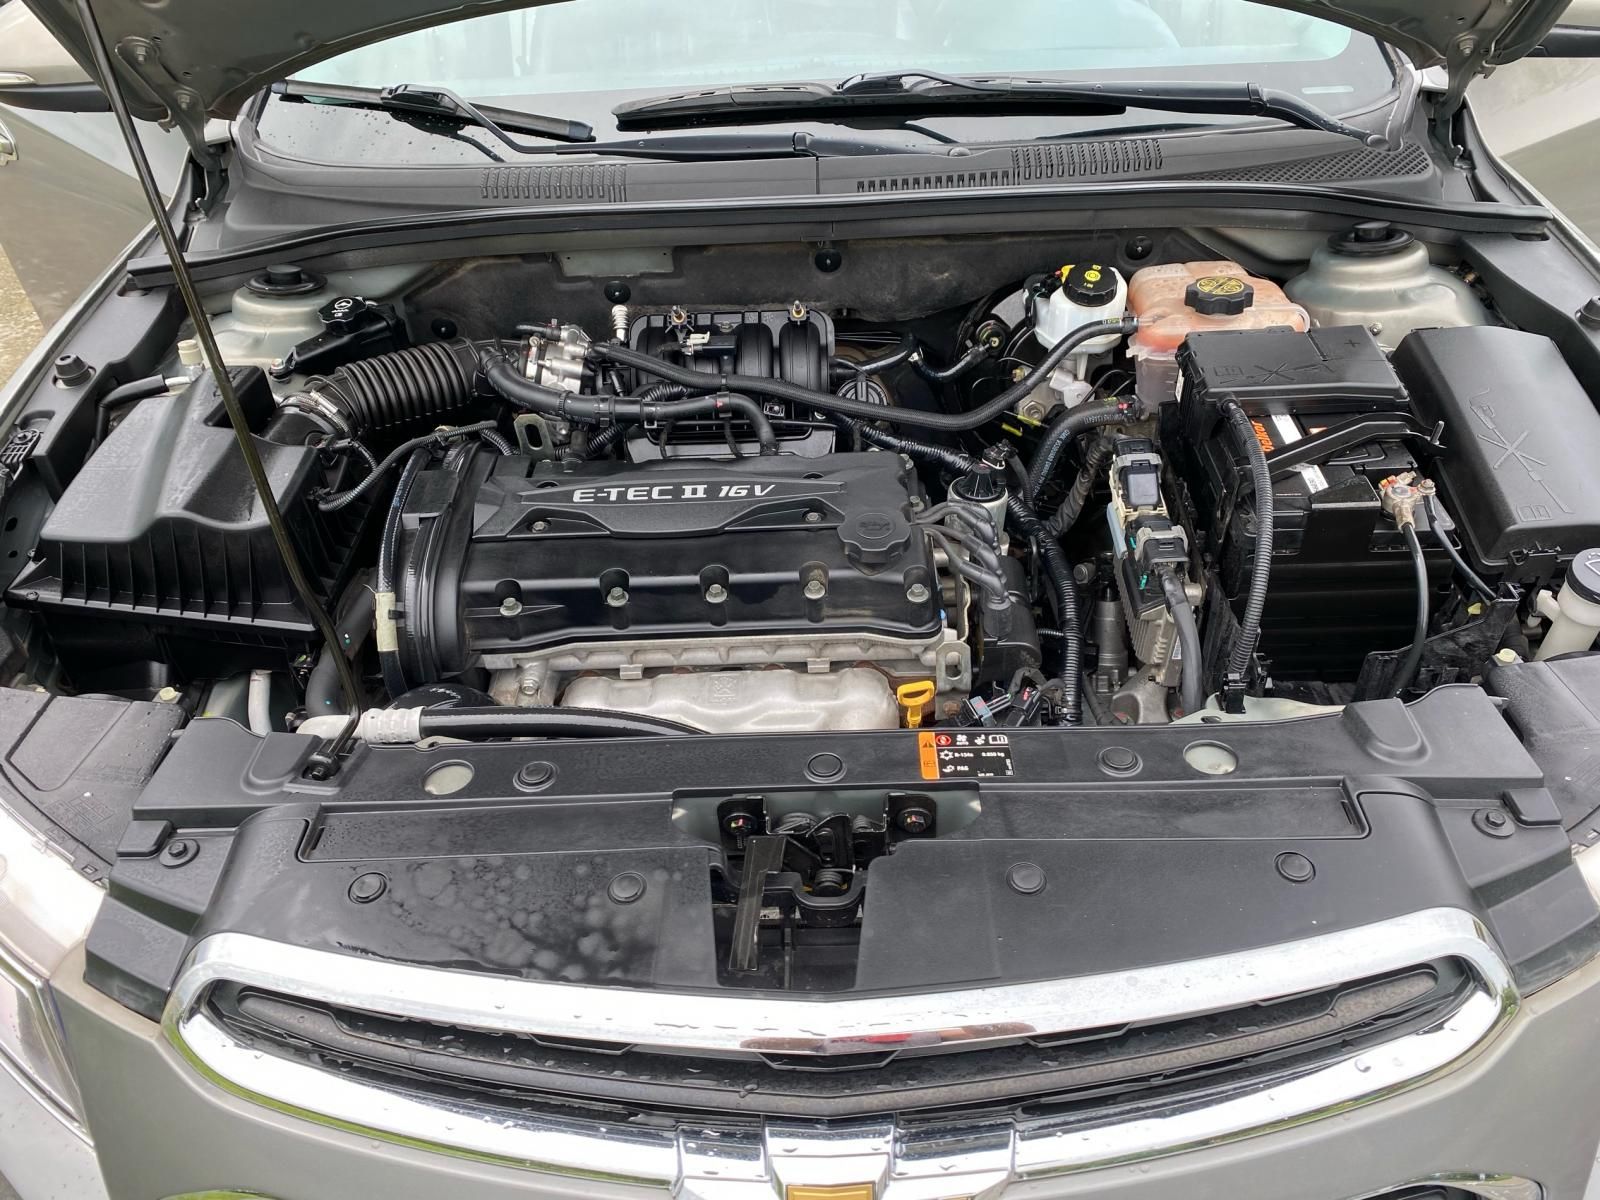 Chevrolet Cruze 2018 - Cần bán xe đăng ký lần đầu 2018, mới 95% giá 358tr